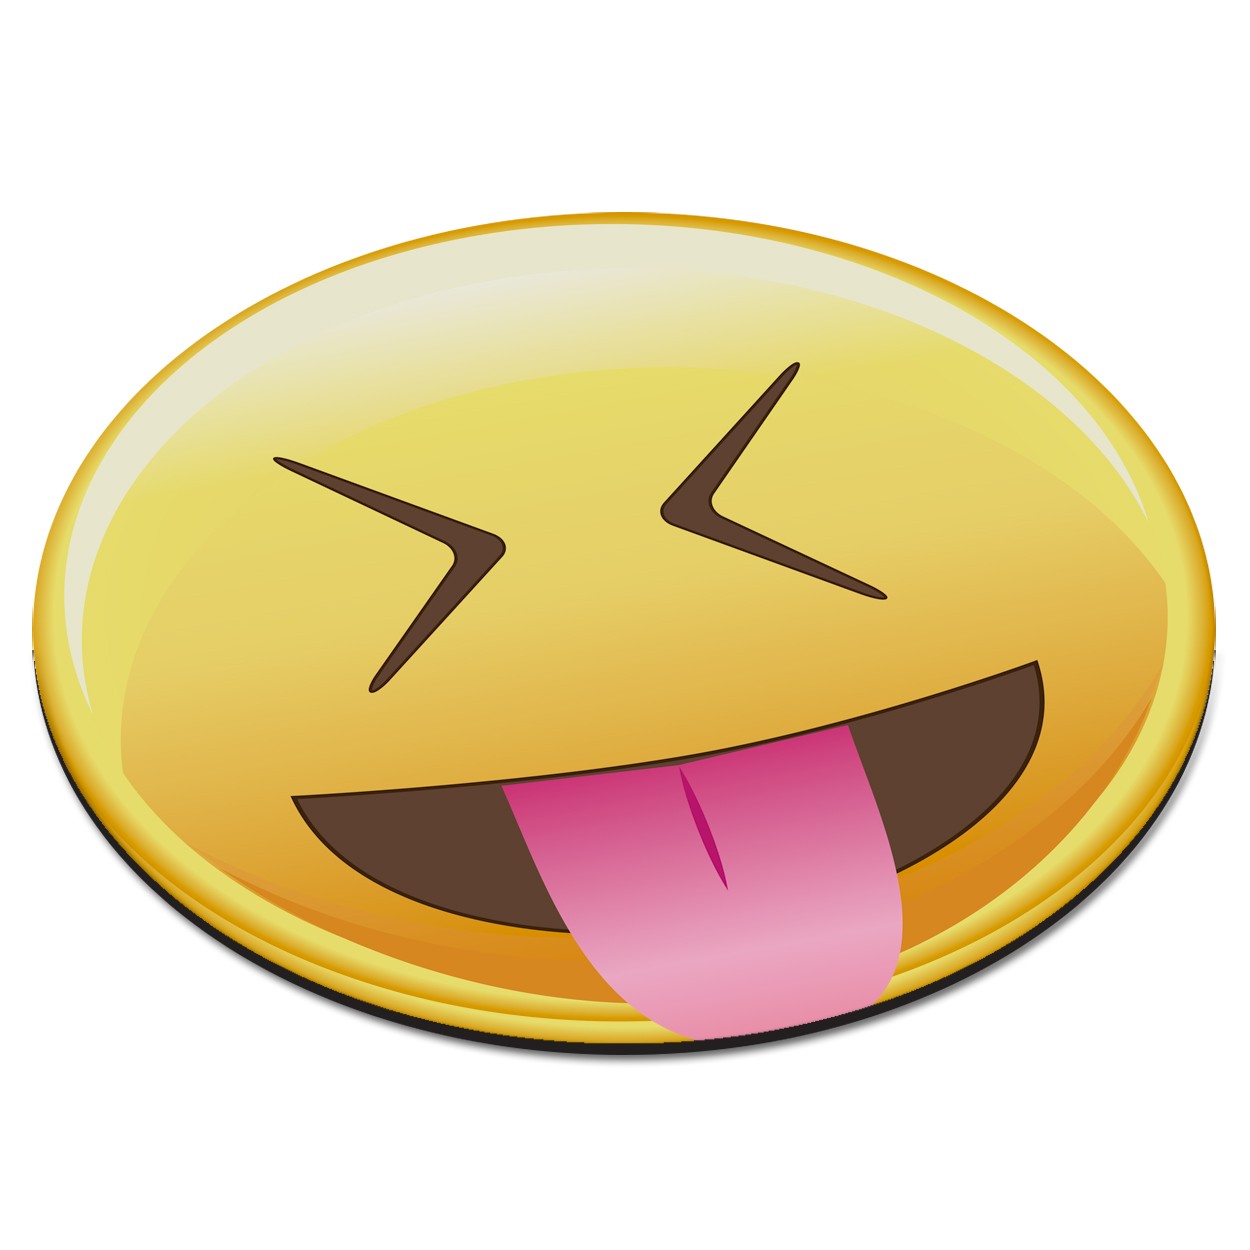 Emoji Tongue Out Closed Eyes Smiley Face Circular PC Computer Mouse Mat Pad